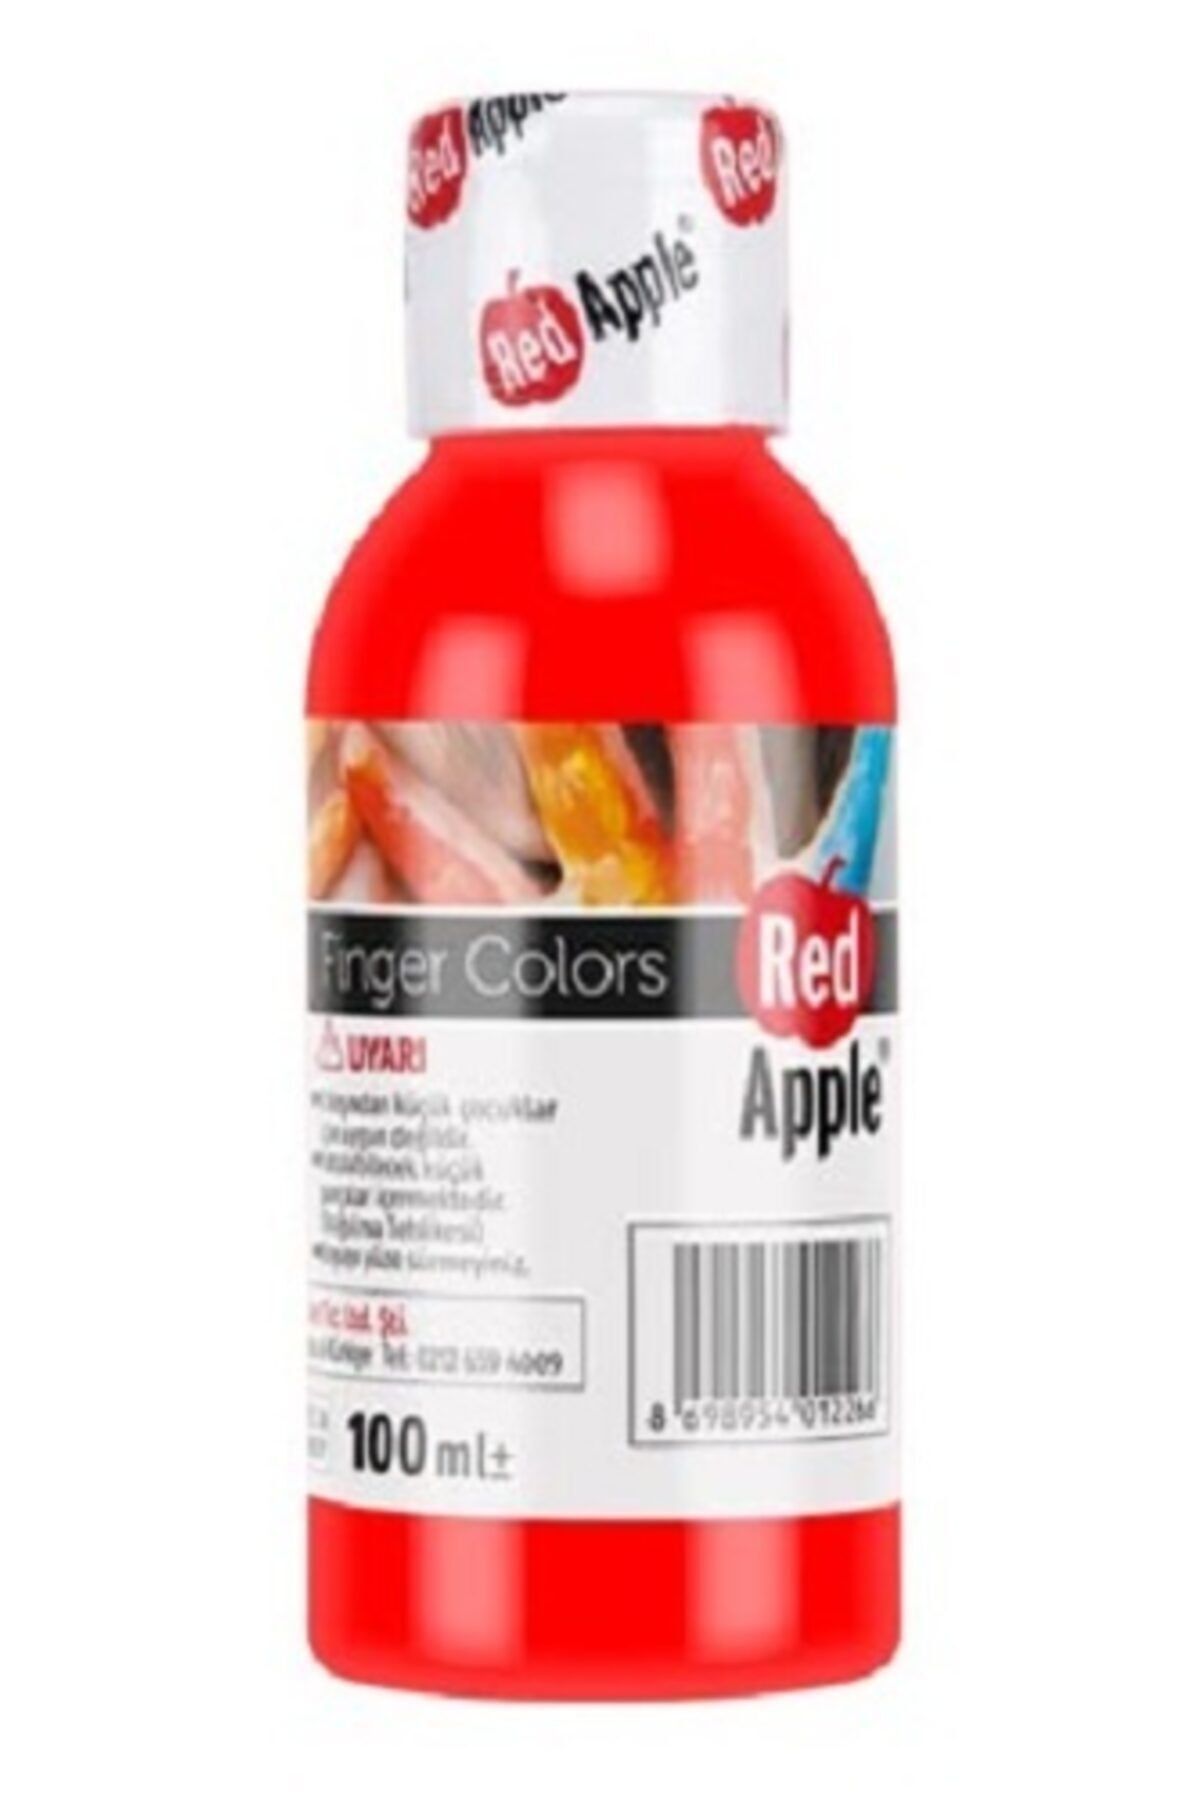 Red Apple Parmak Boyası Kırmızı 100 gr. Rp110-12